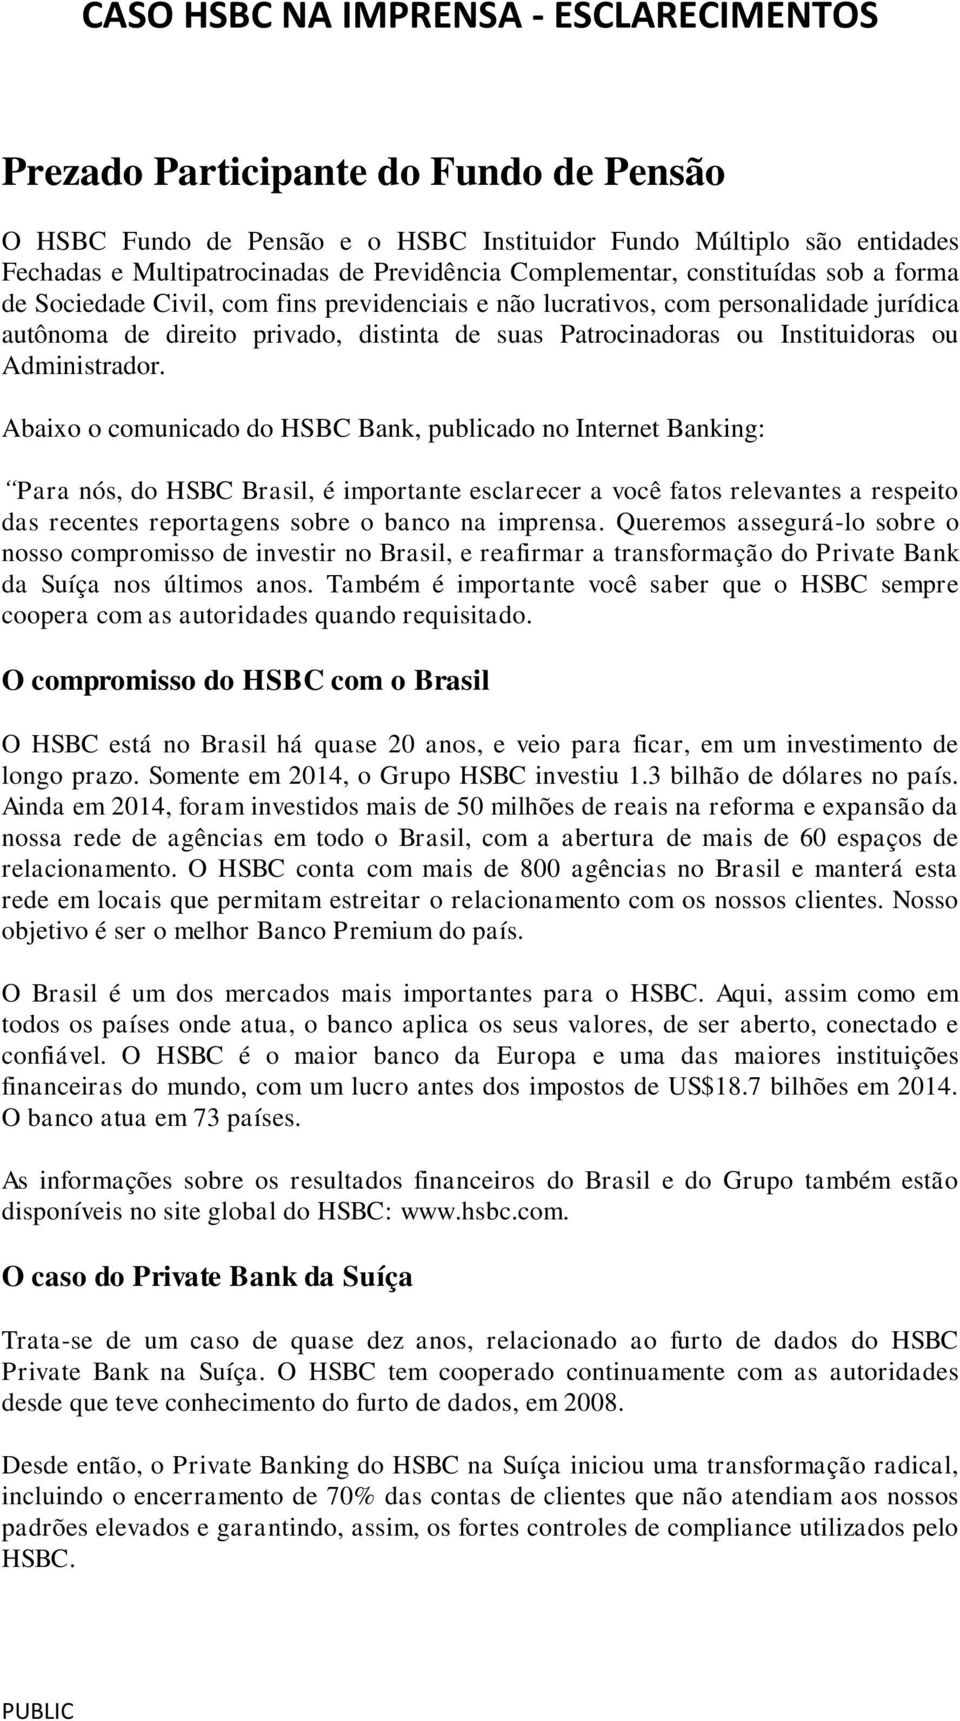 Abaixo o comunicado do HSBC Bank, publicado no Internet Banking: Para nós, do HSBC Brasil, é importante esclarecer a você fatos relevantes a respeito das recentes reportagens sobre o banco na